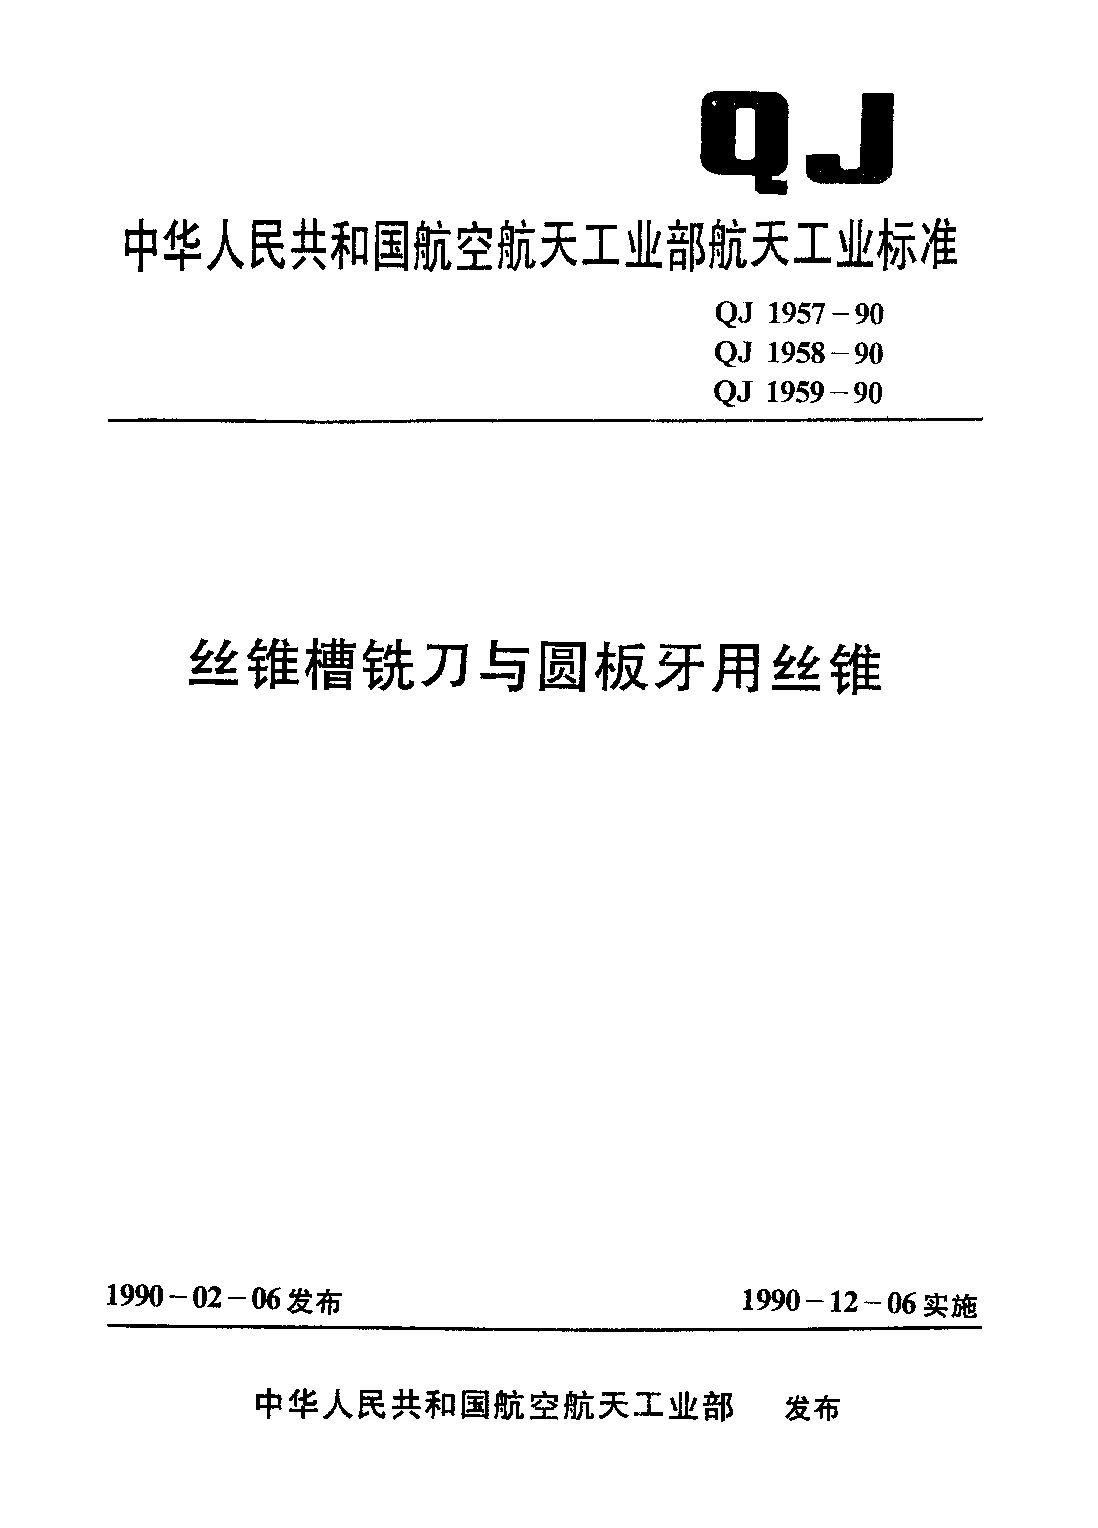 QJ 1959-1990封面图